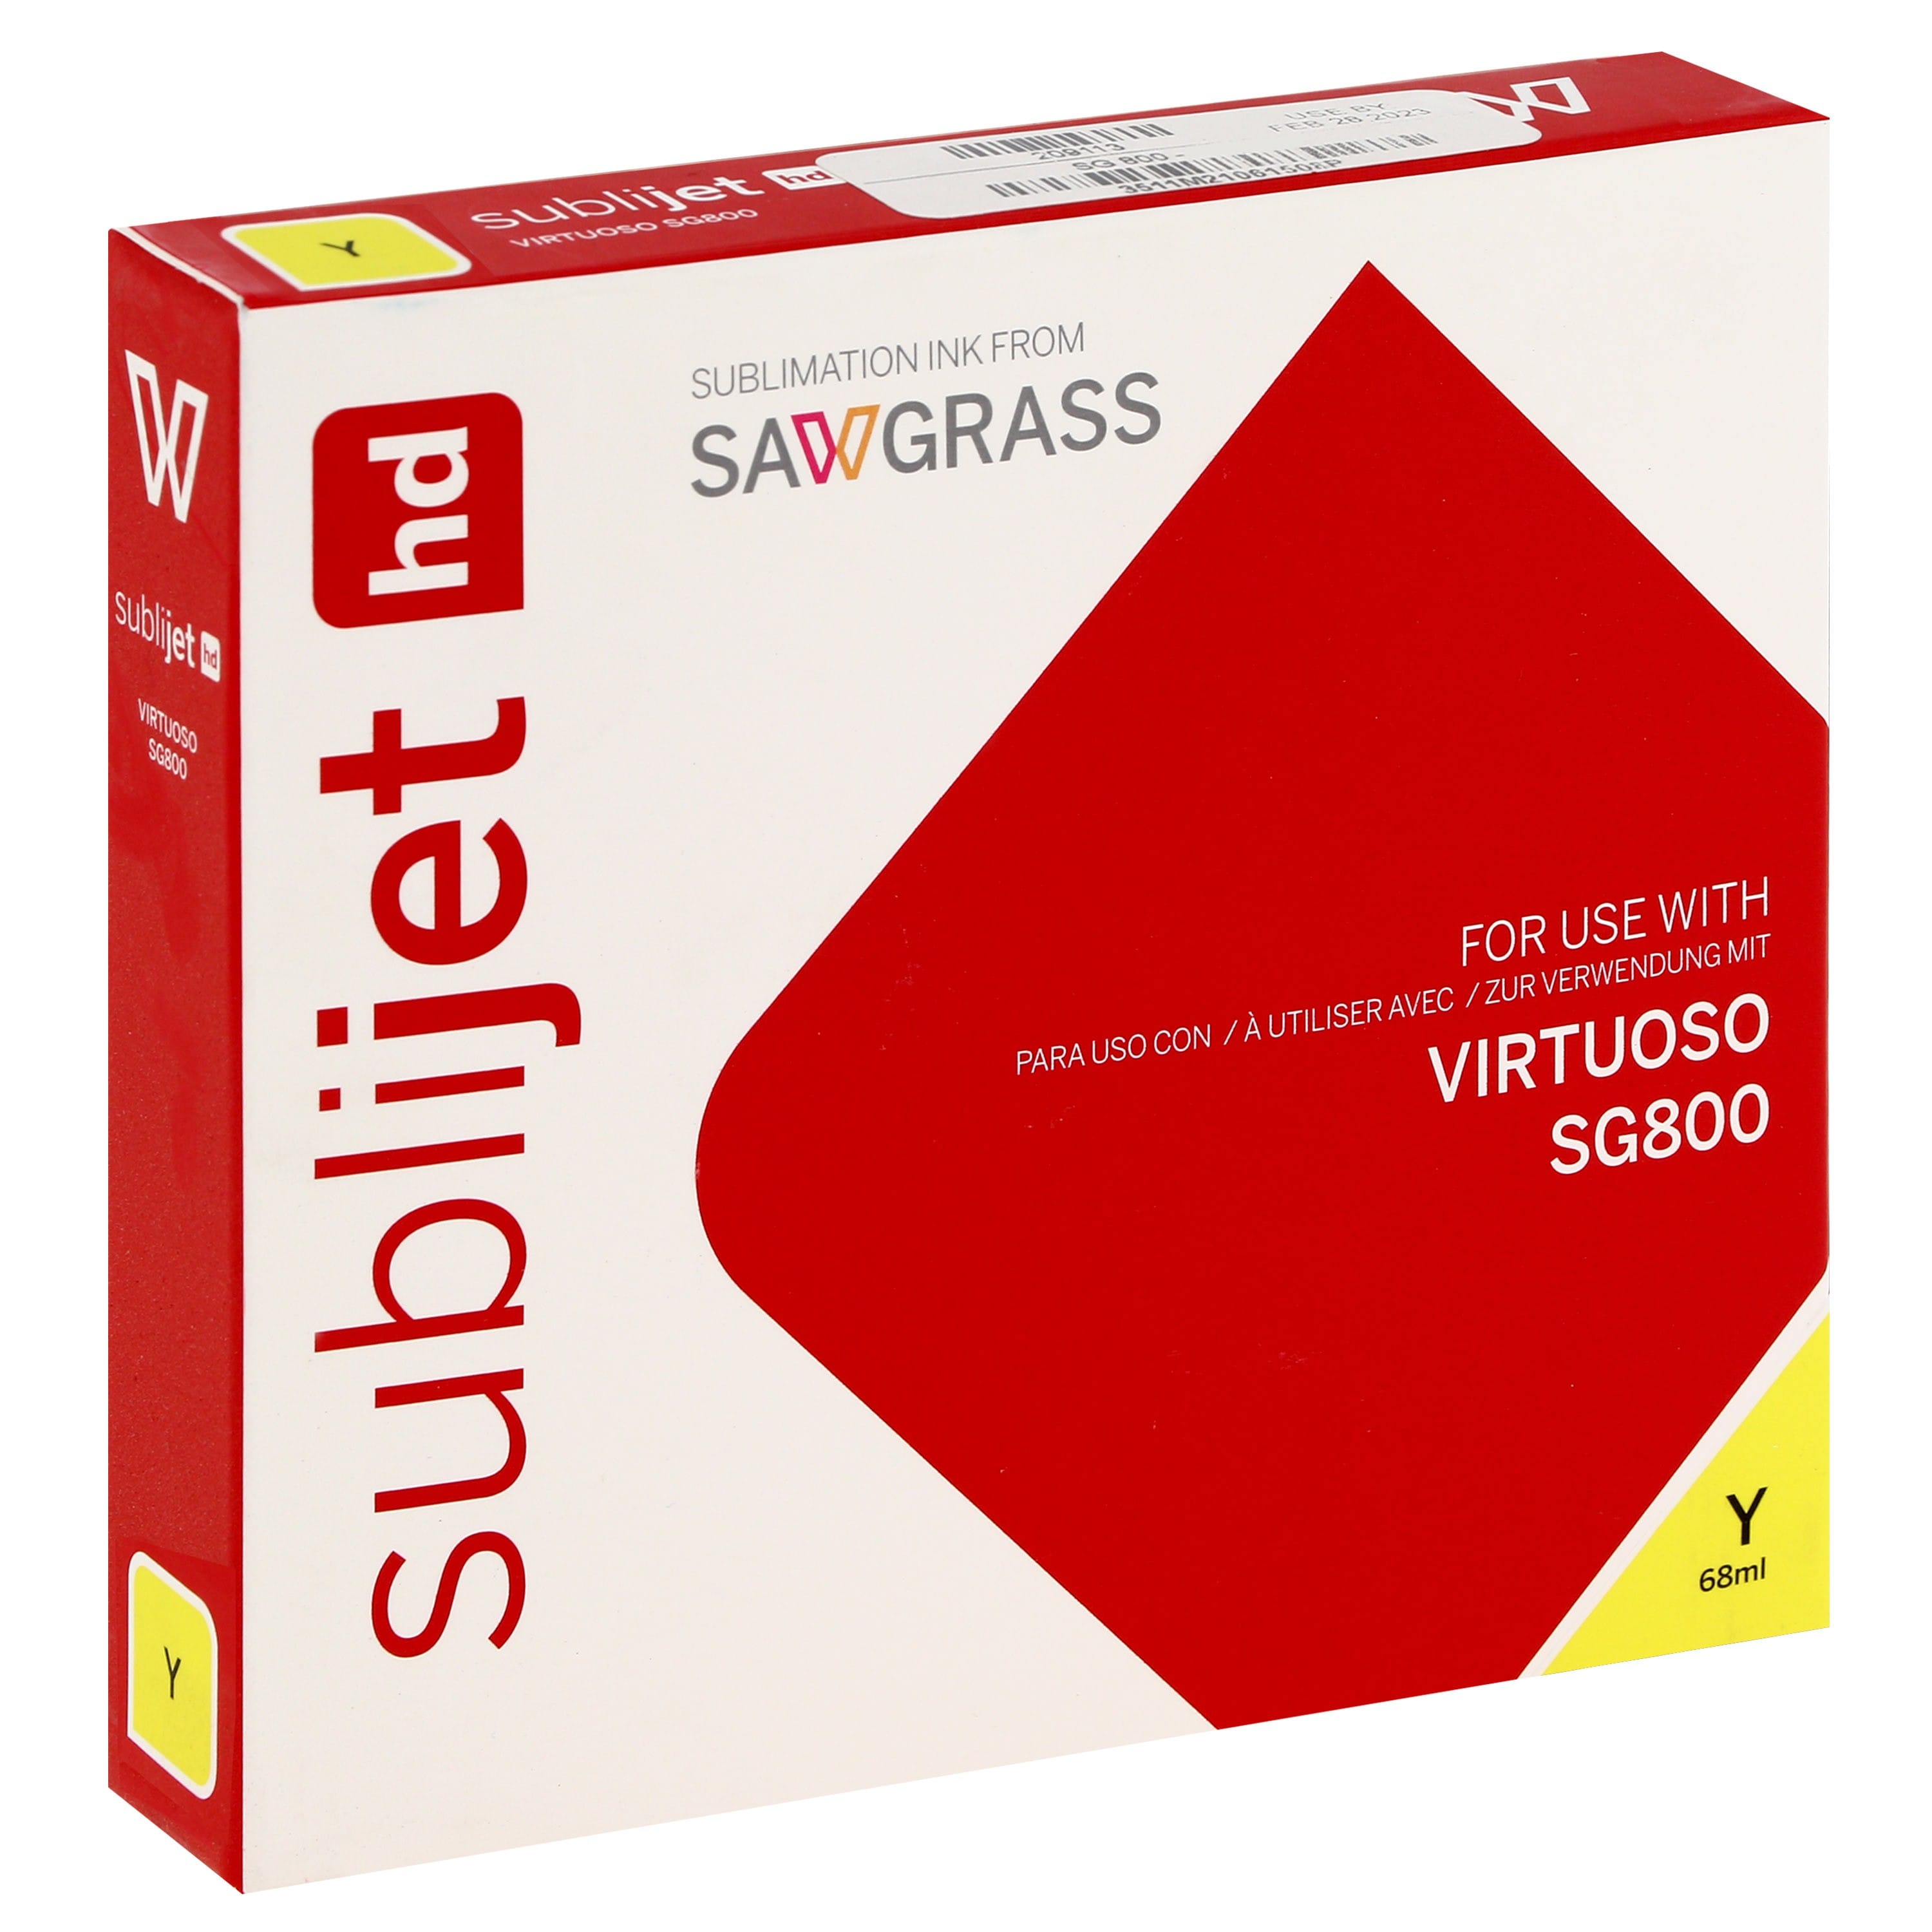 SAWGRASS - Encre sublimation Sublijet - Jaune 68ml - pour Sawgrass SG800